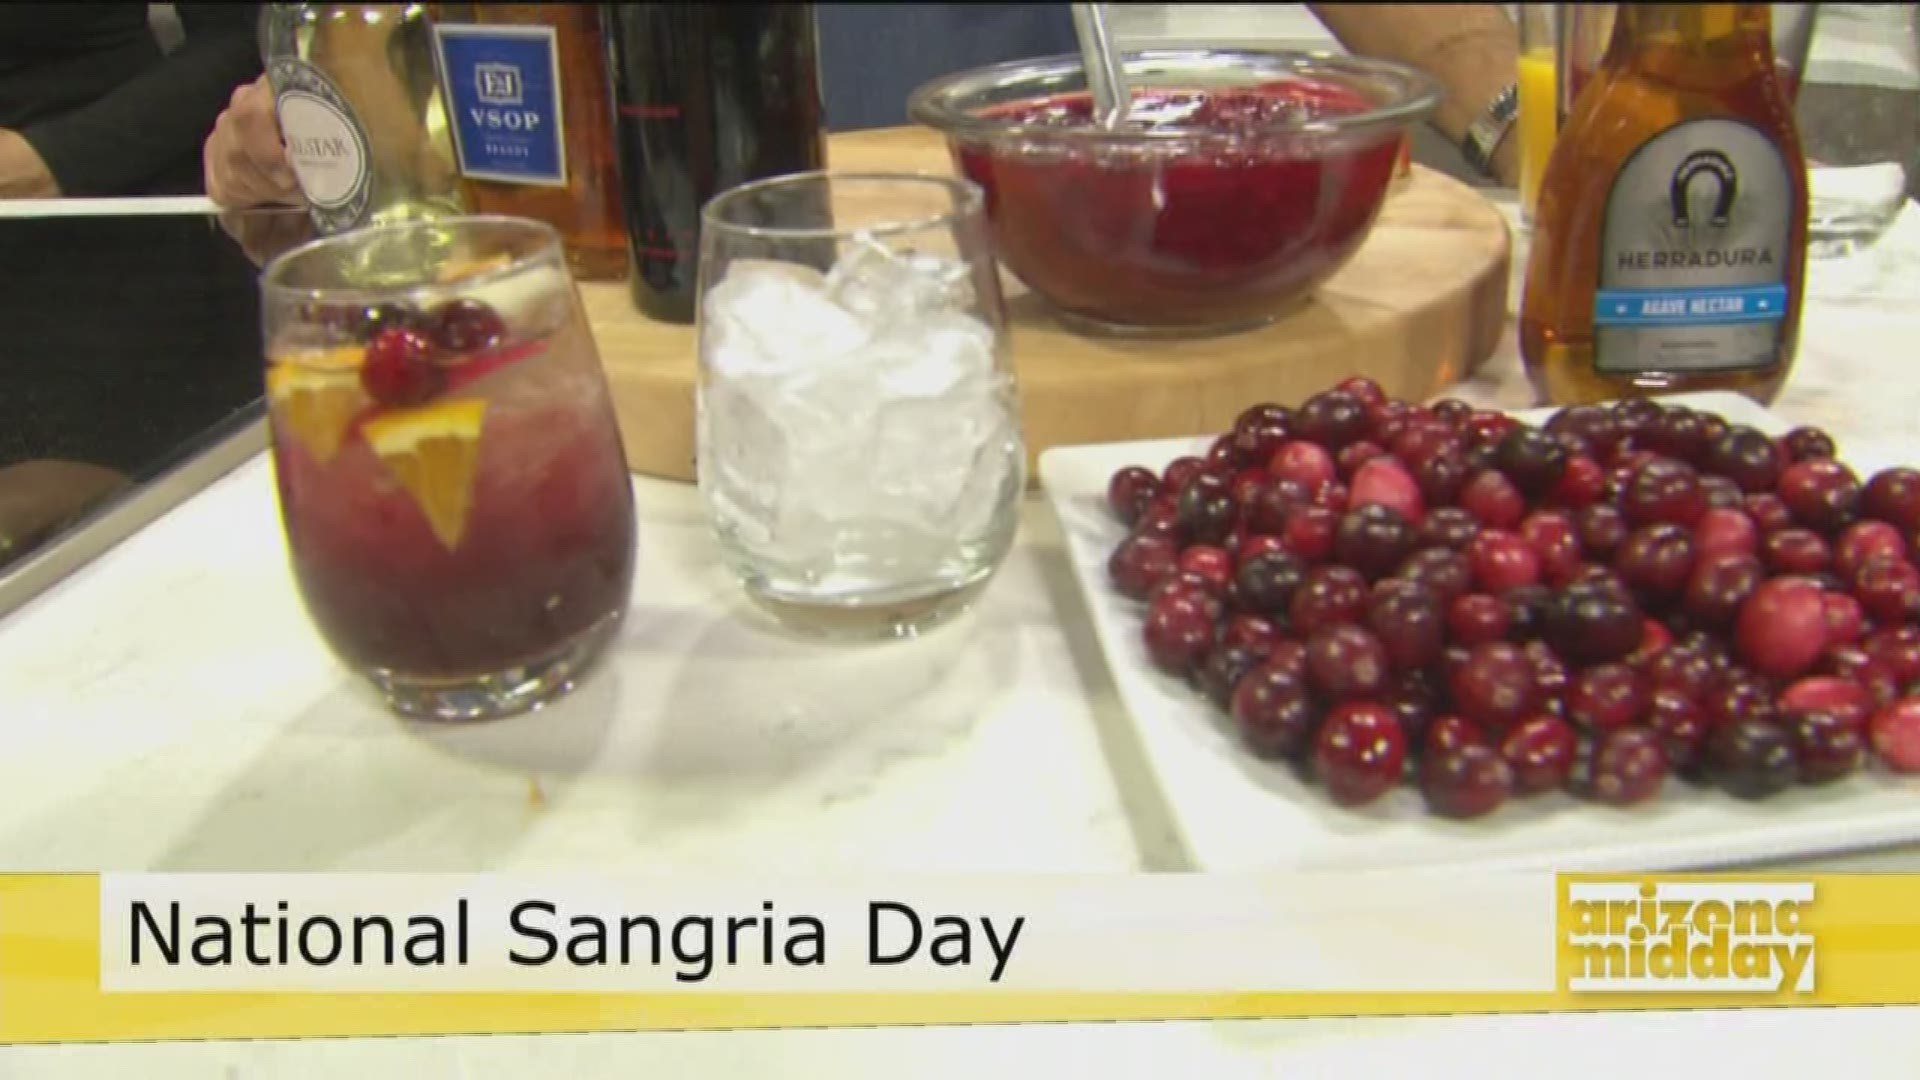 Chef David Borrego from Urban Margarita shares his family recipe for Cranberry Pomegranate Sangria